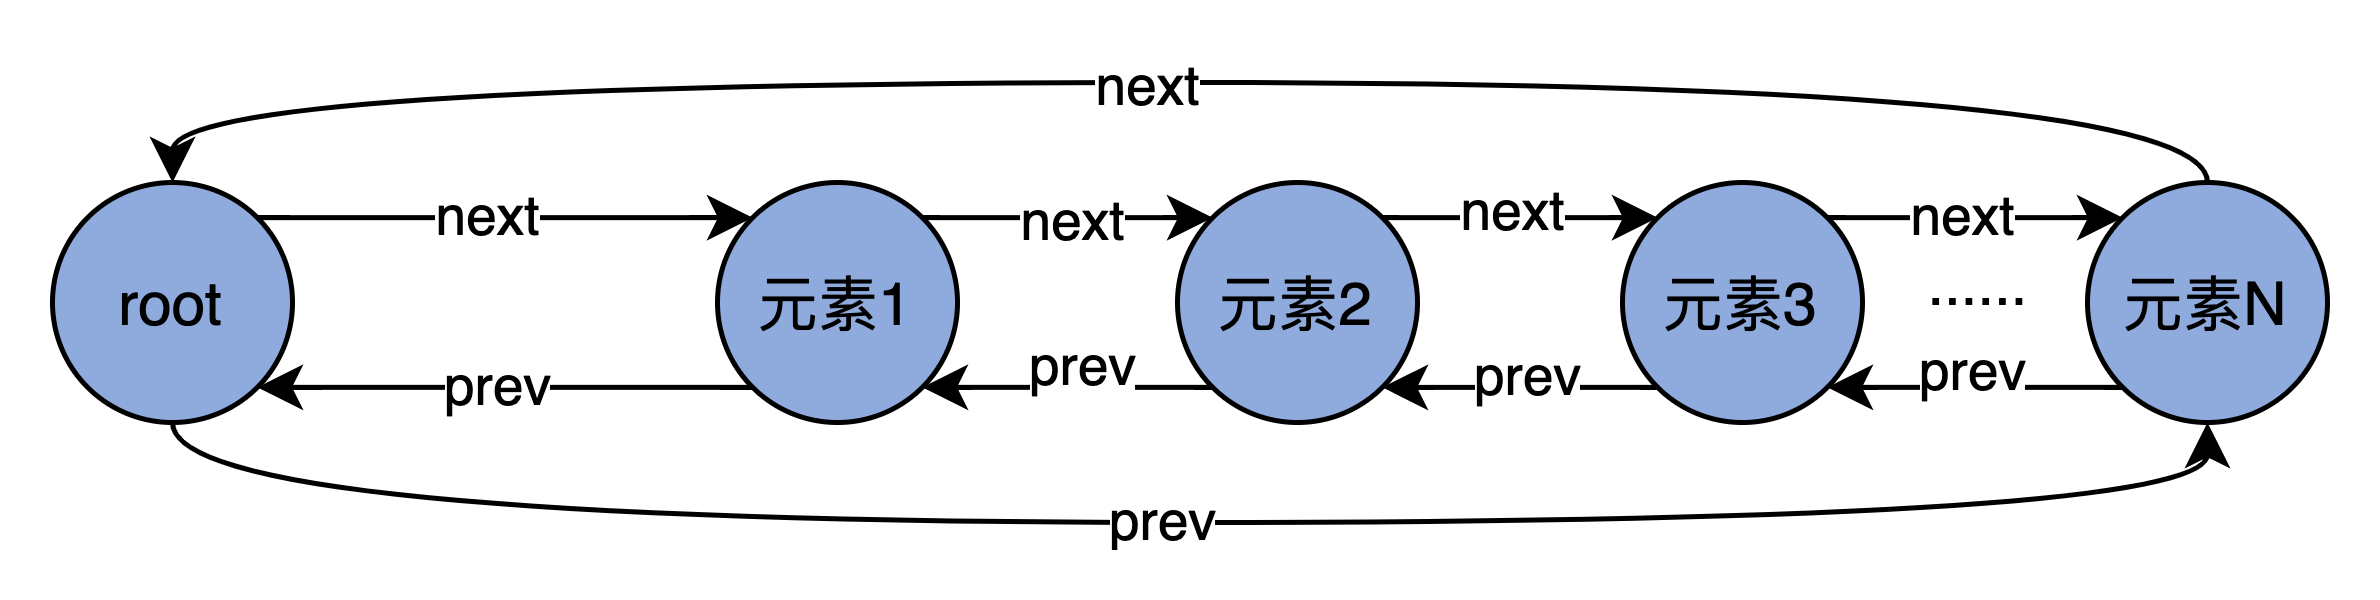 双端循环链表.png